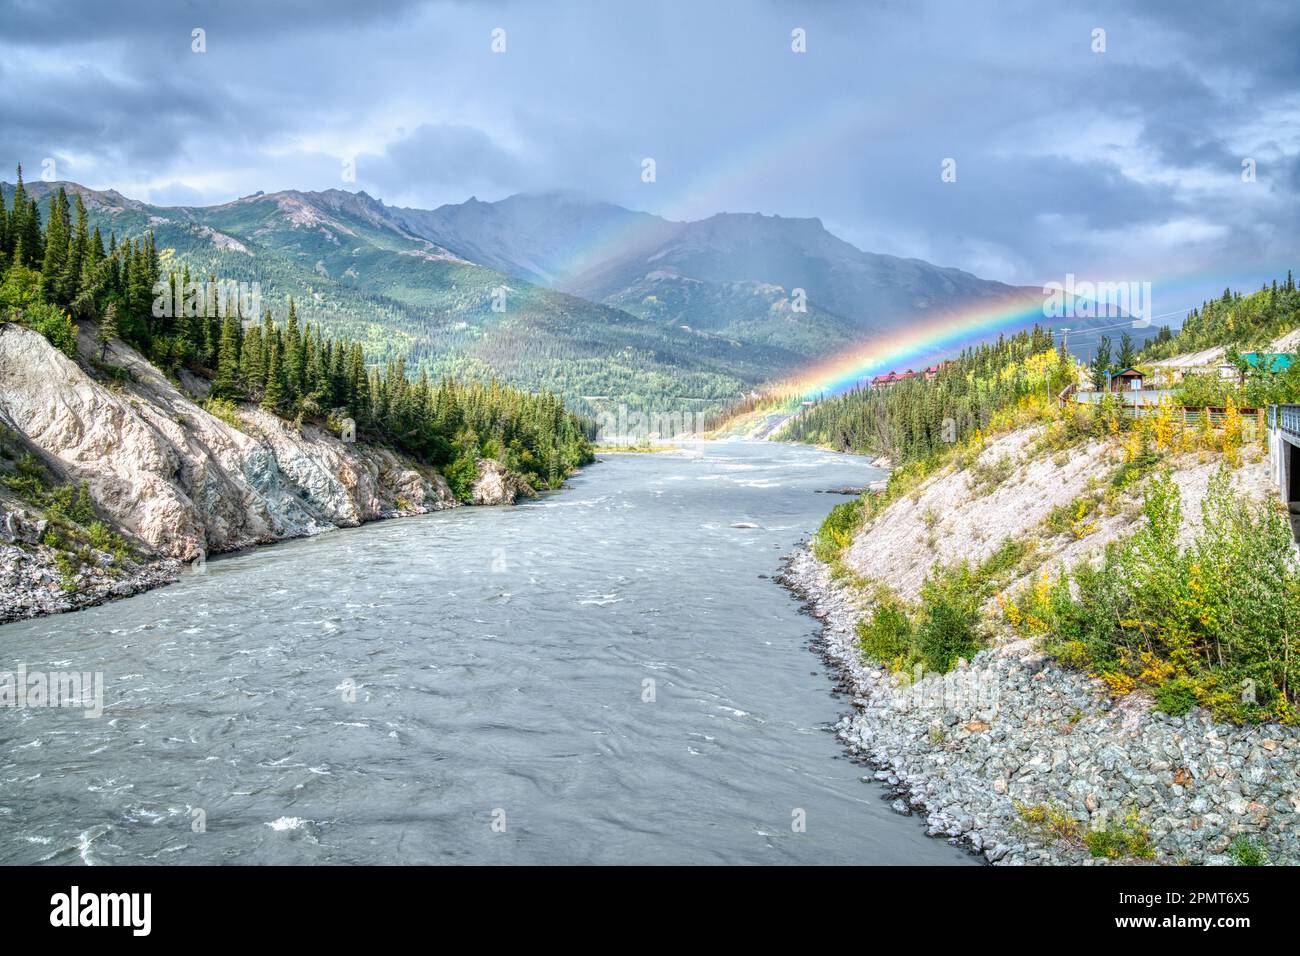 Beautiful rainbow over the Nenana River in Denali National Park, Alaska Stock Photo